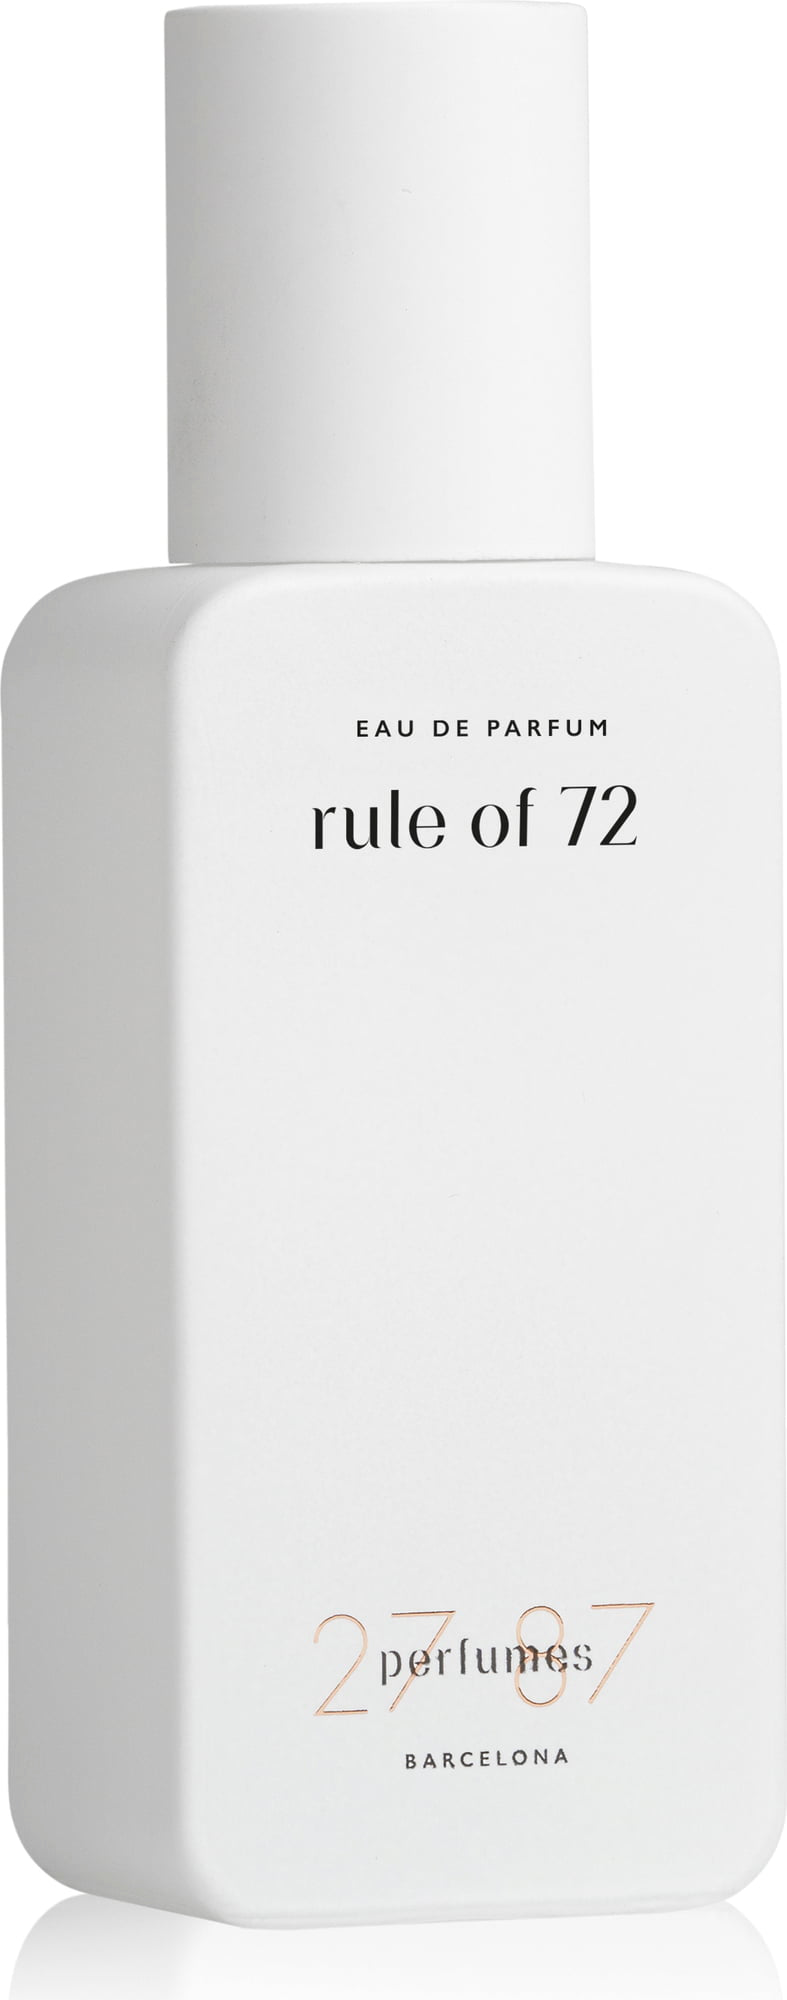 27 87 Rule of 72 Eau de Parfum - 27 ml